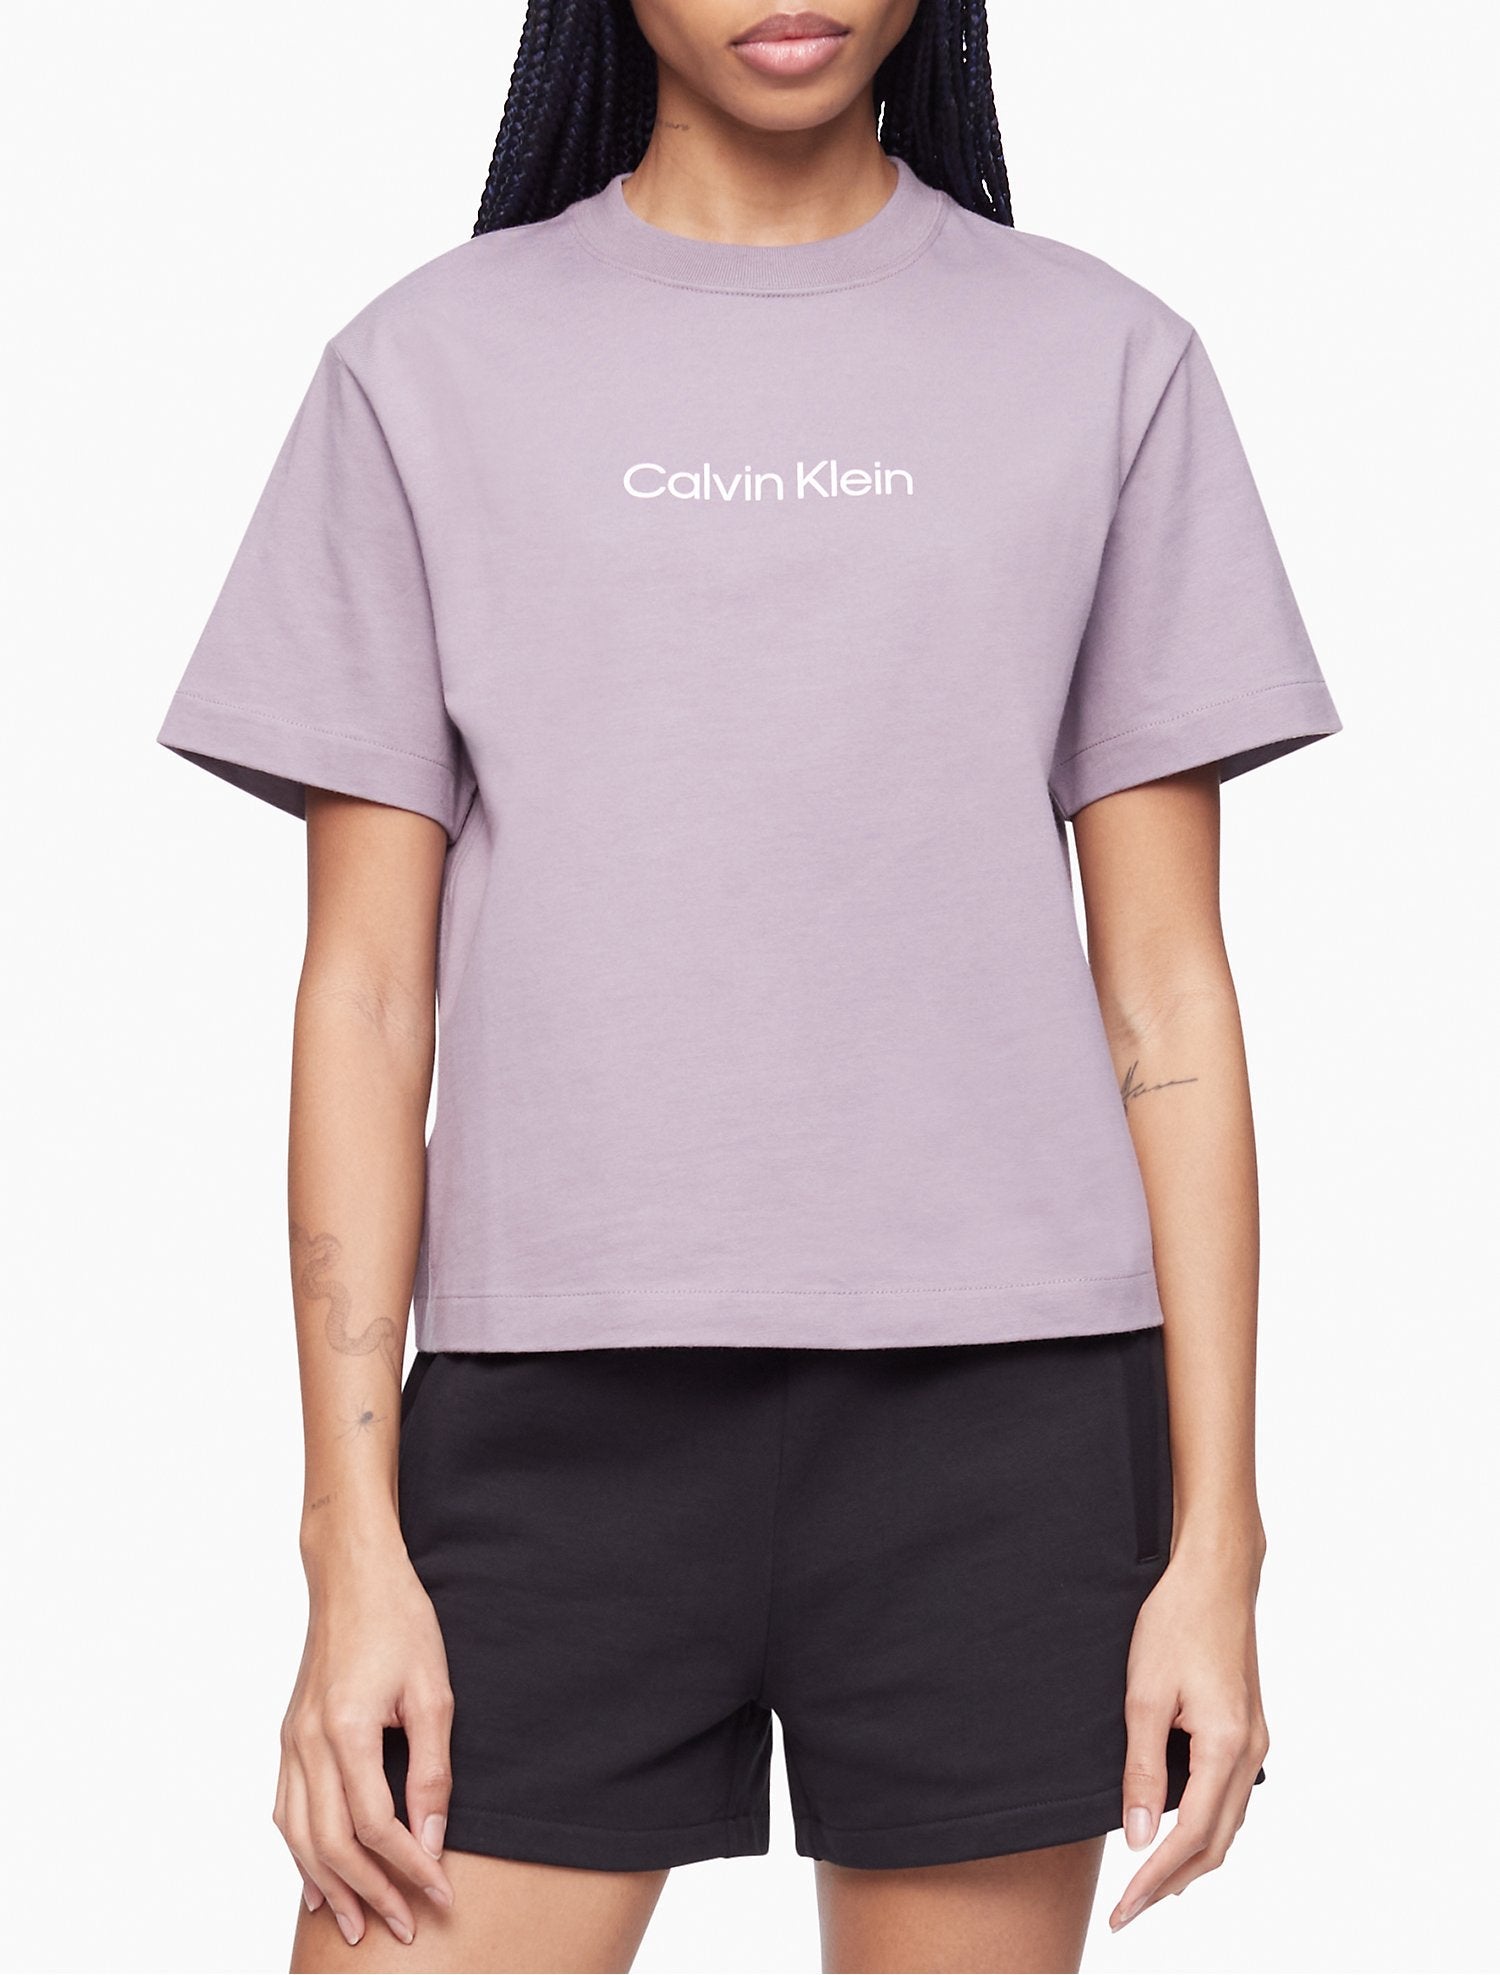 Calvin Klein Relaxed Fit Standard Logo Crewneck - T-Shirt Women